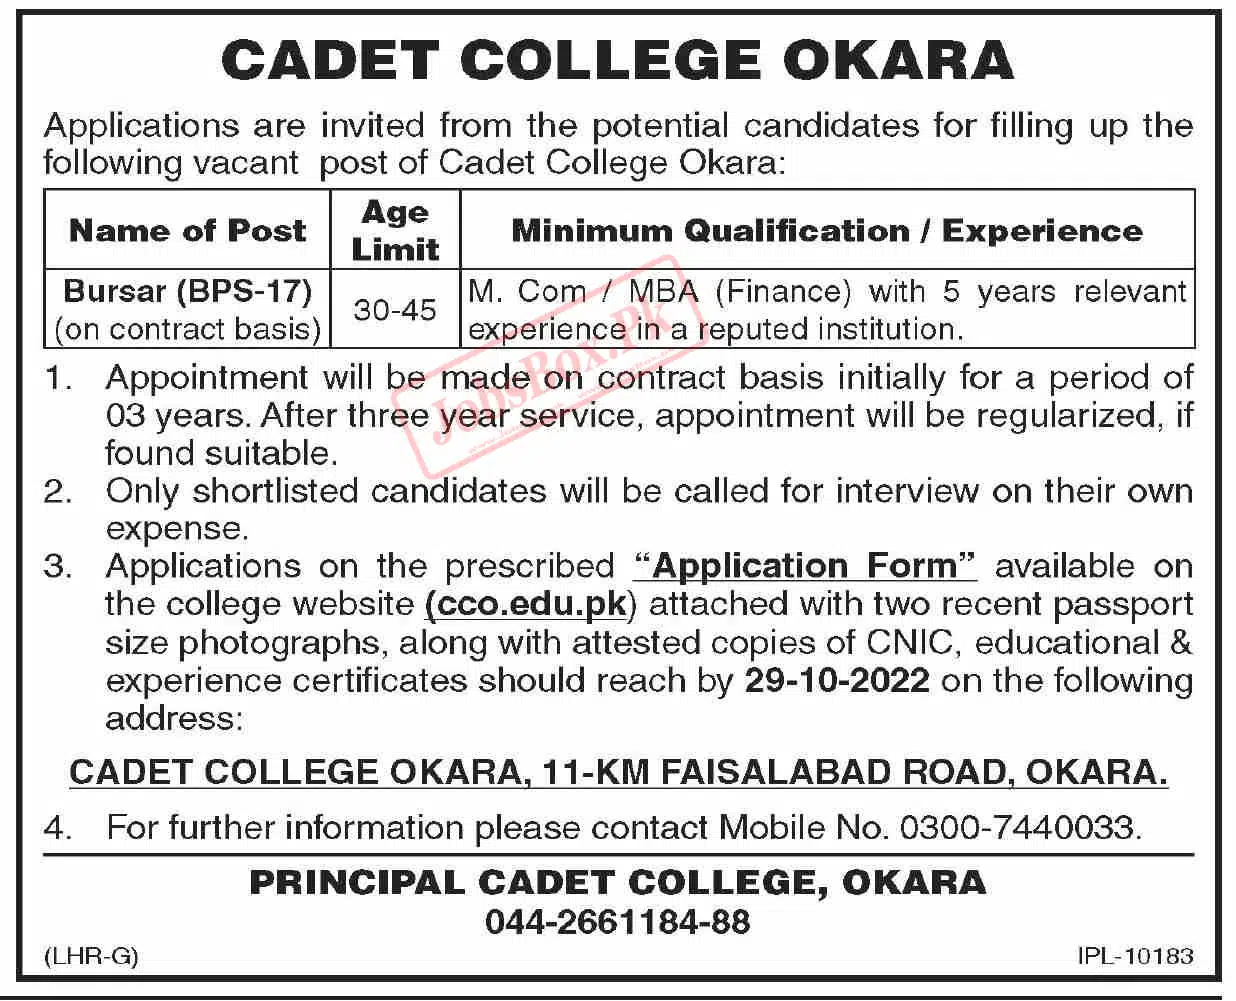 Cadet College Okara Jobs 2022 for Bursar - Download Form